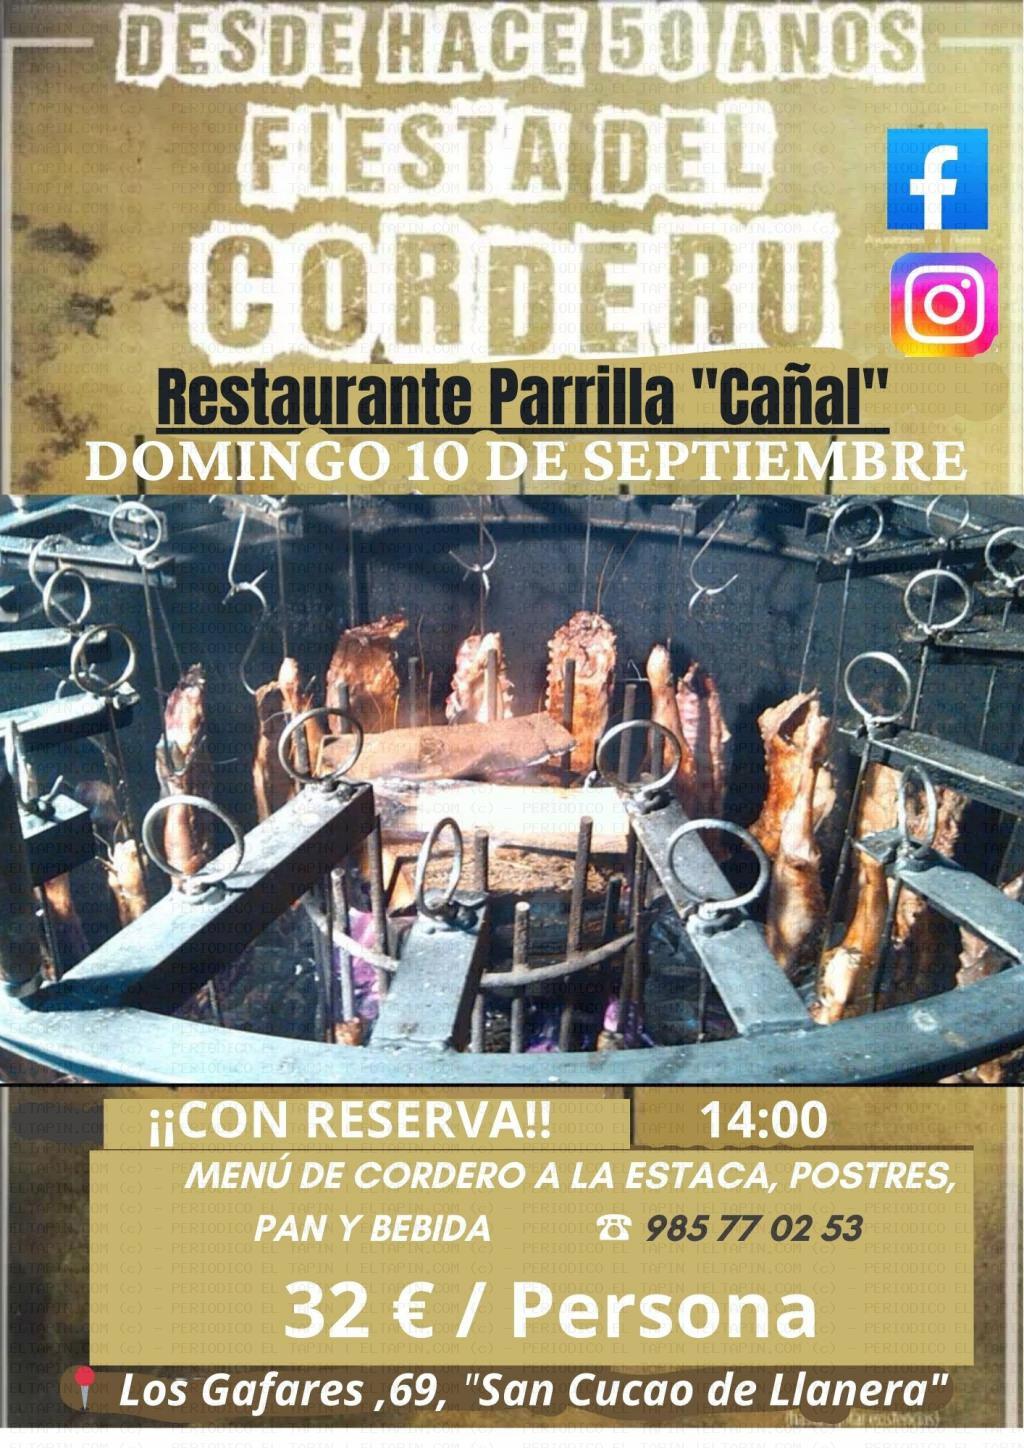 El Tapin - El Restaurante Parrilla Cañal organiza el domingo 10 de septiembre la “Fiesta del Corderu”